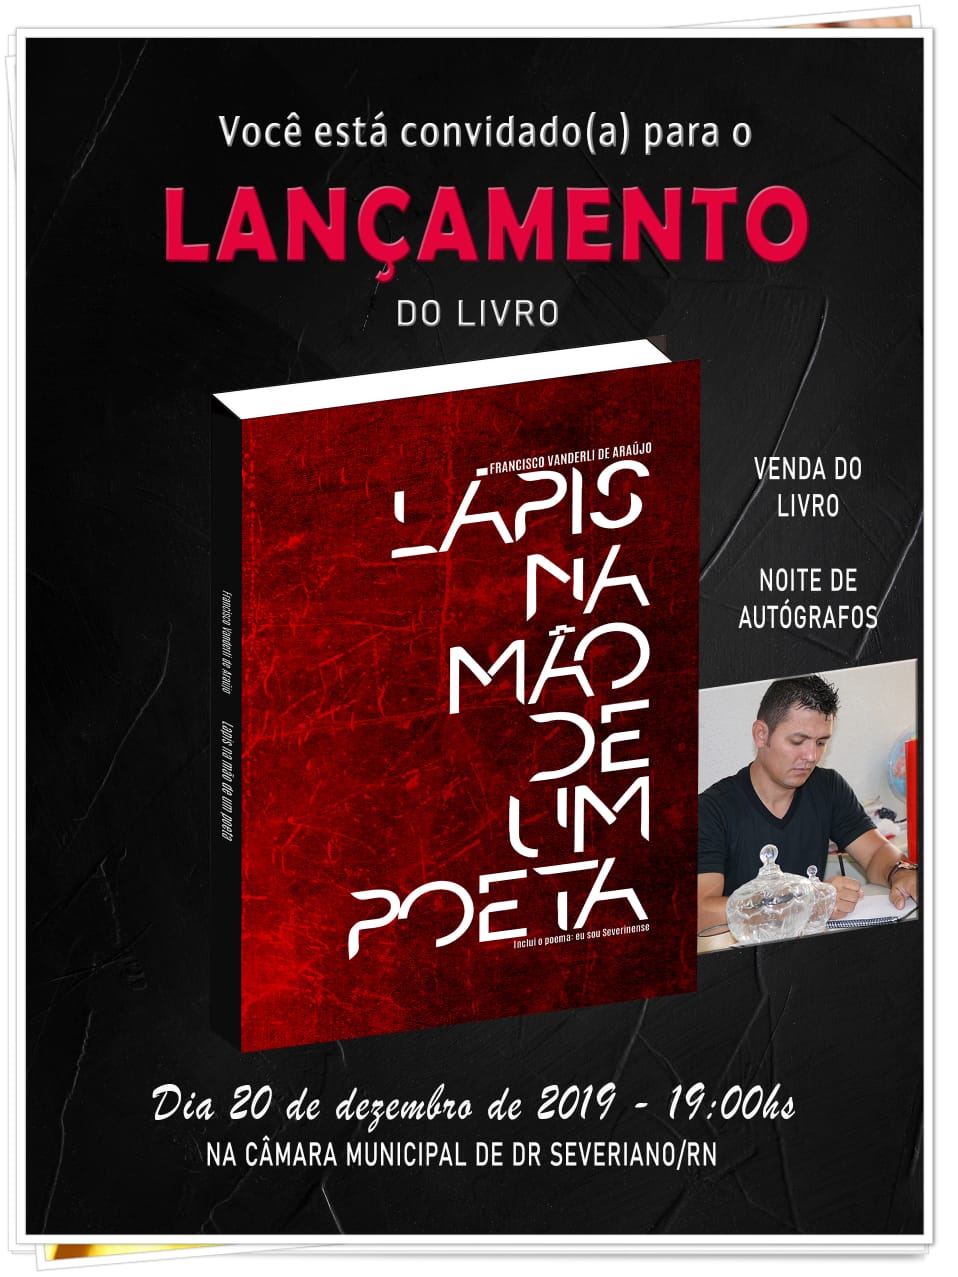 Lançamento do livro "LÁPIS NA MÃO DE UM POETA", do autor Severianense FRANCISCO VANDERLI DE ARAÚJO.